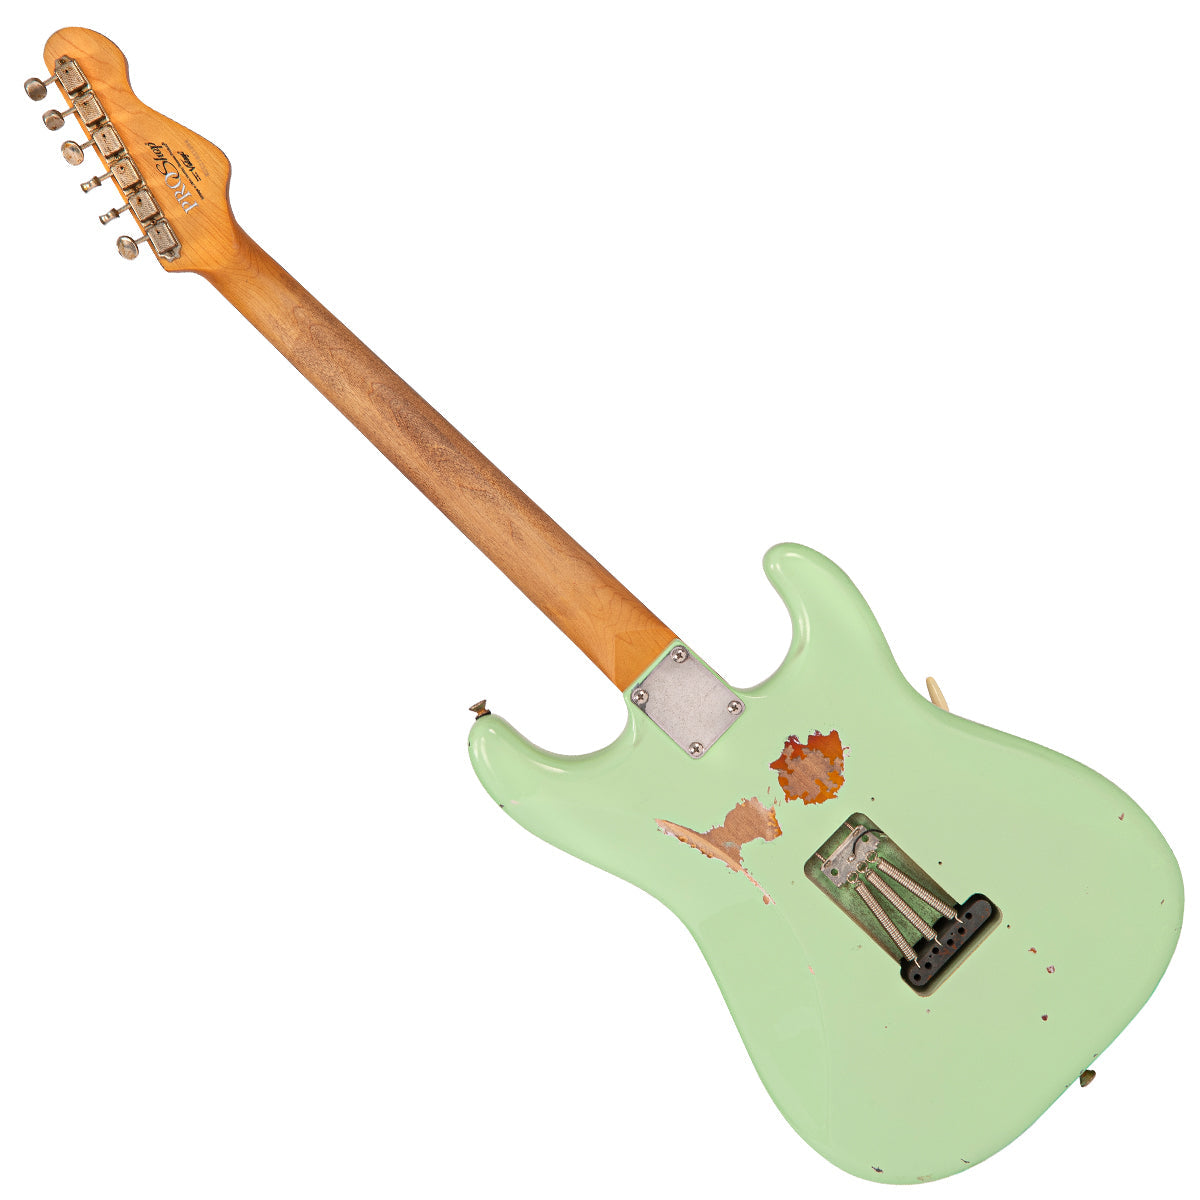 SOLD - Vintage V6 ProShop Unique ~ Surf Green over Sunburst ~ Left Handed, Electric Guitars for sale at Richards Guitars.